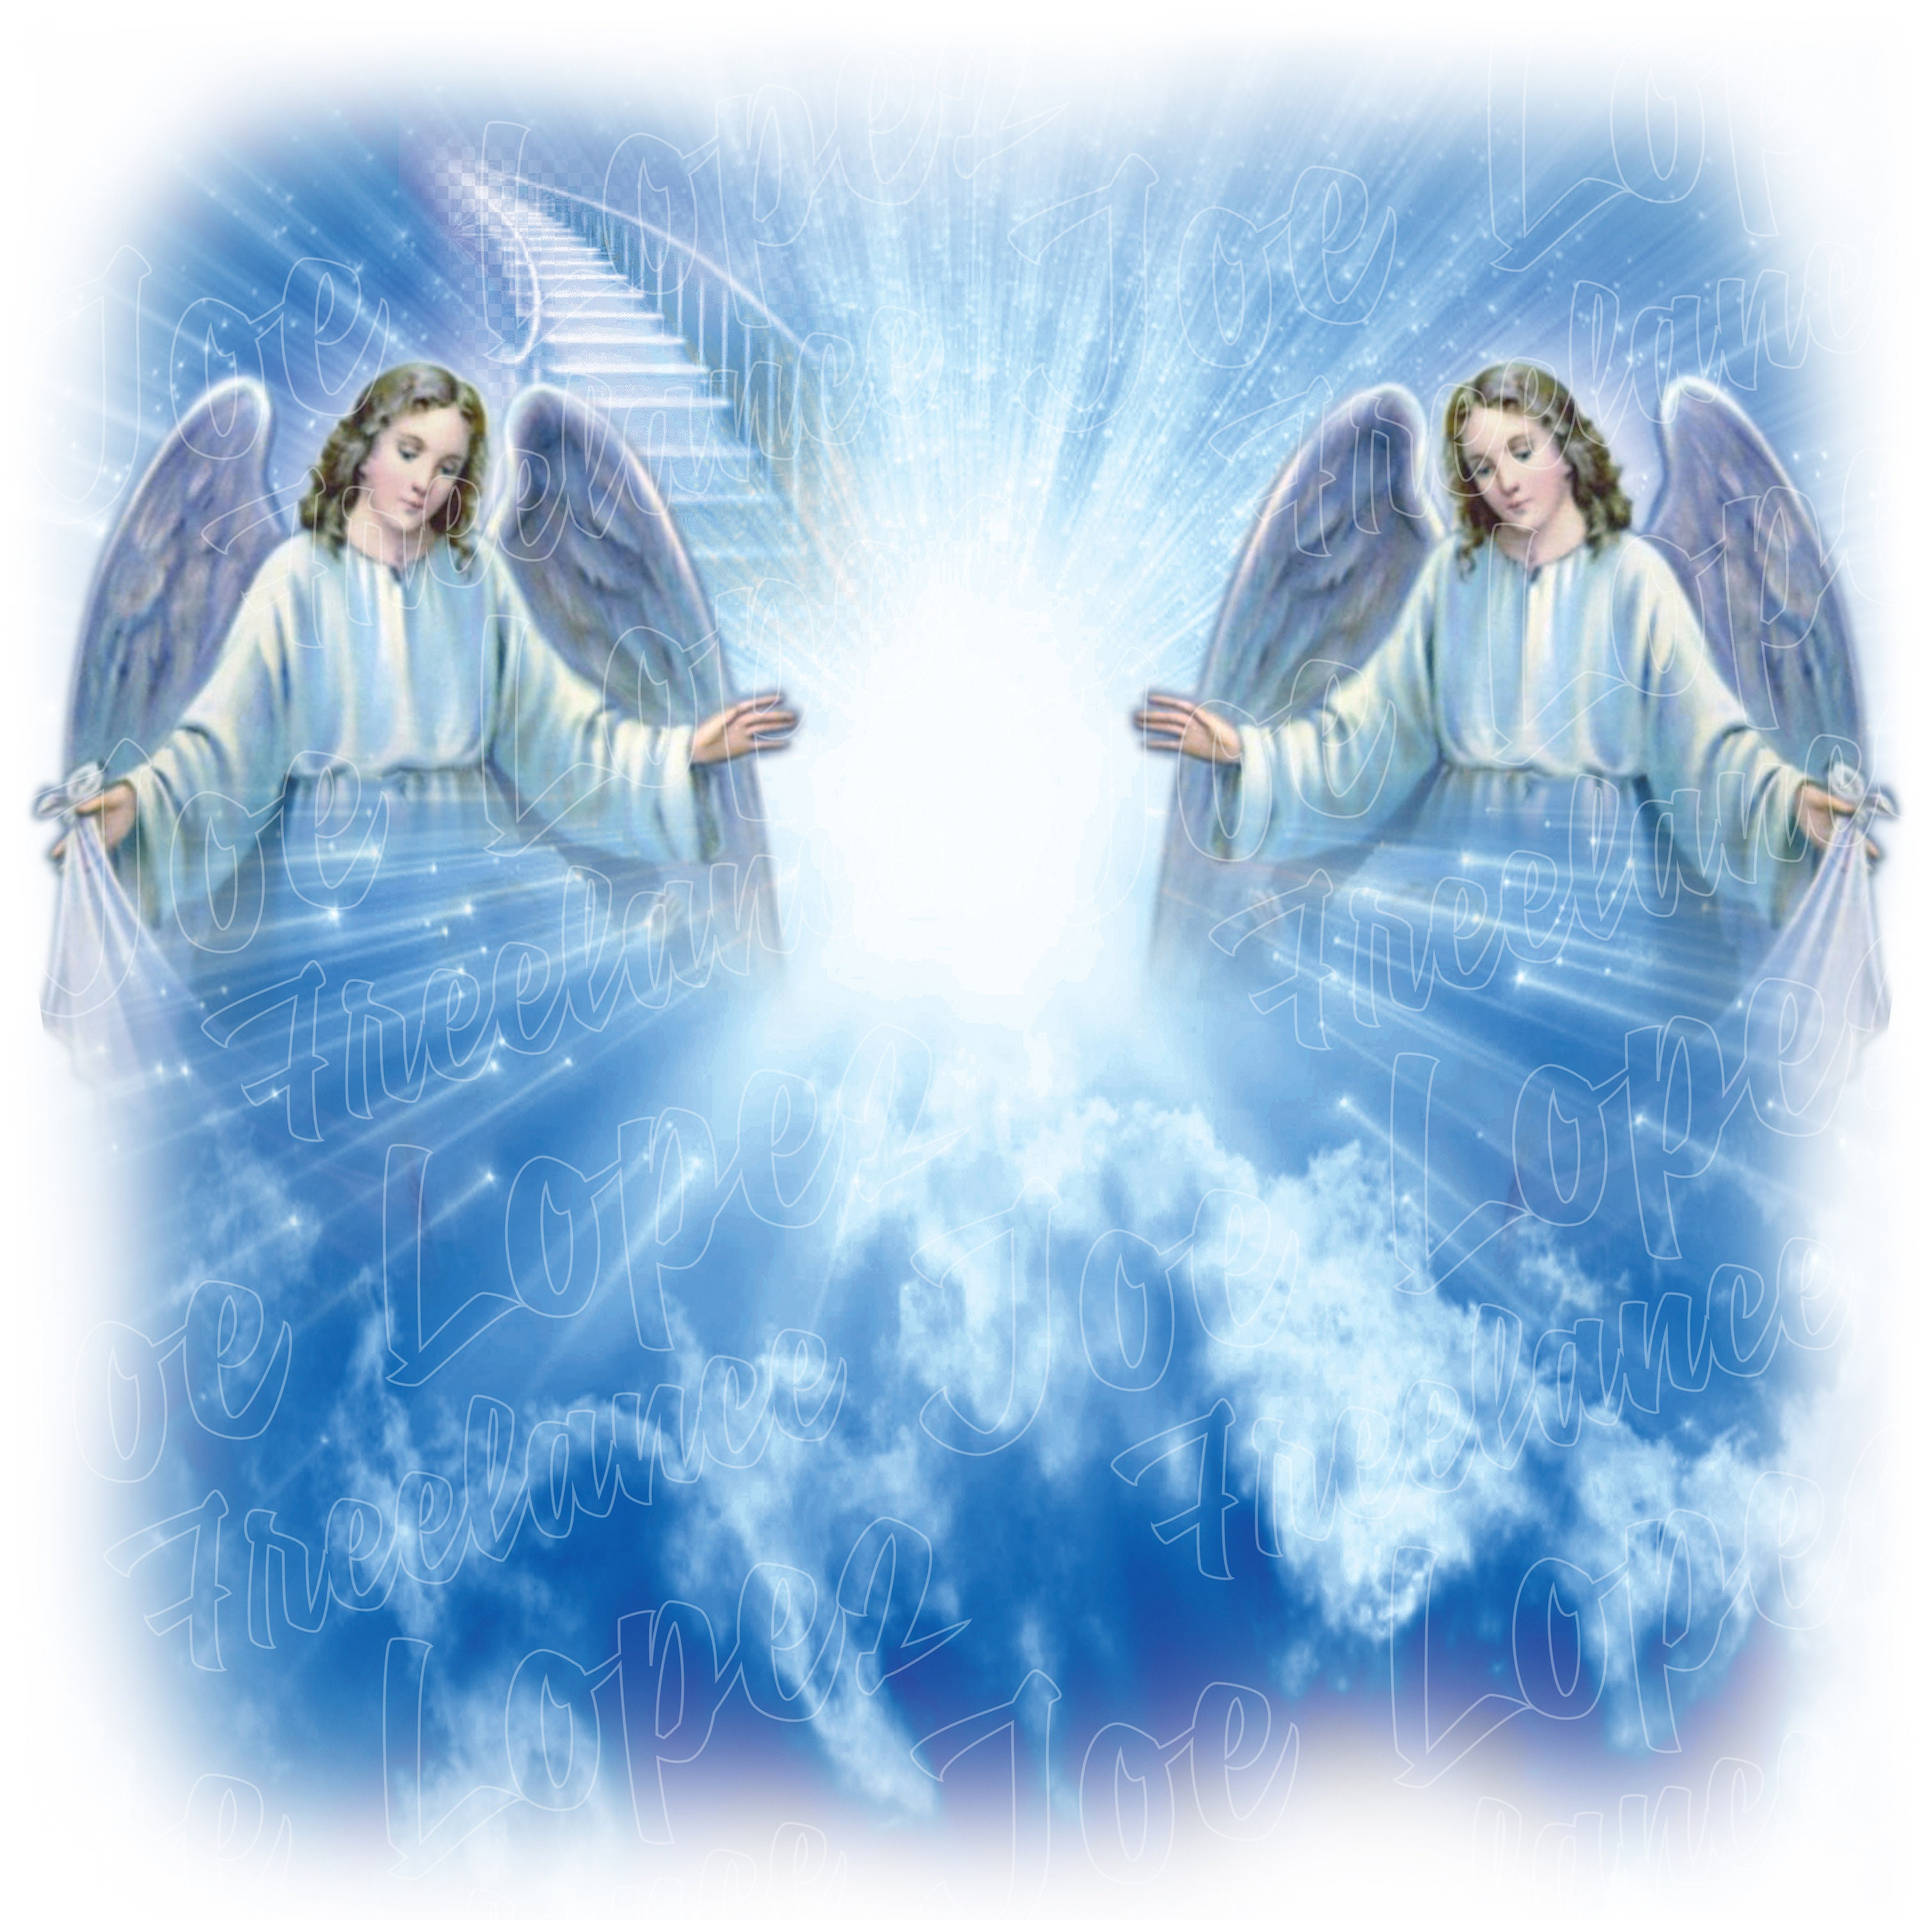 Himlens engle bringer velsignelser og lys til os alle. Wallpaper